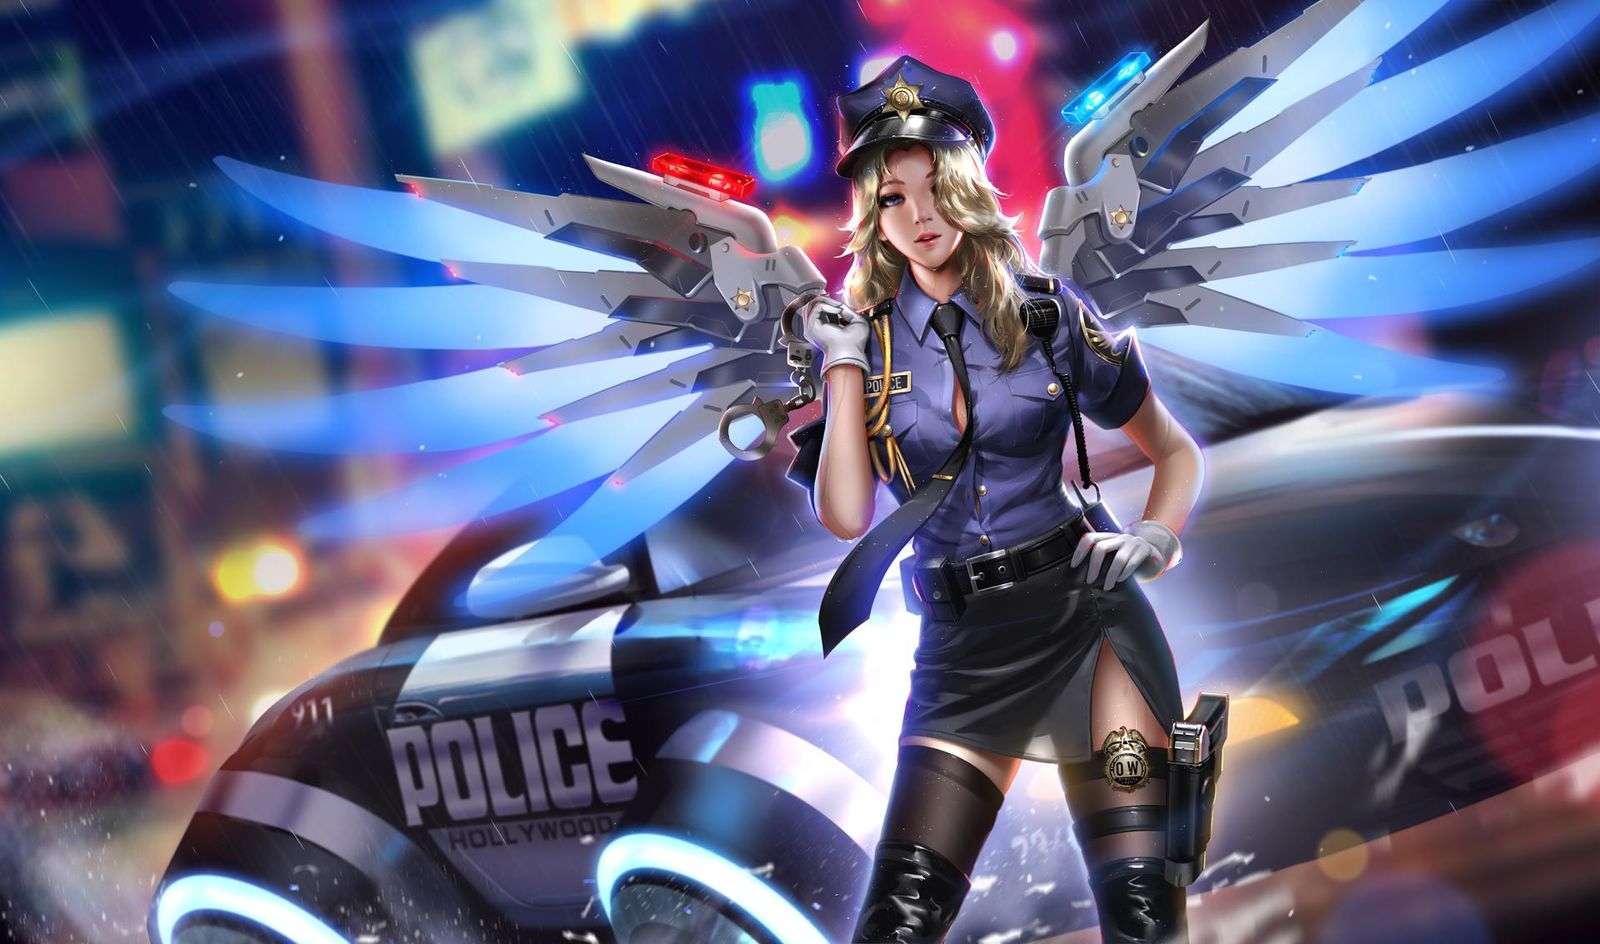 Officer Mercy-Officer梁星